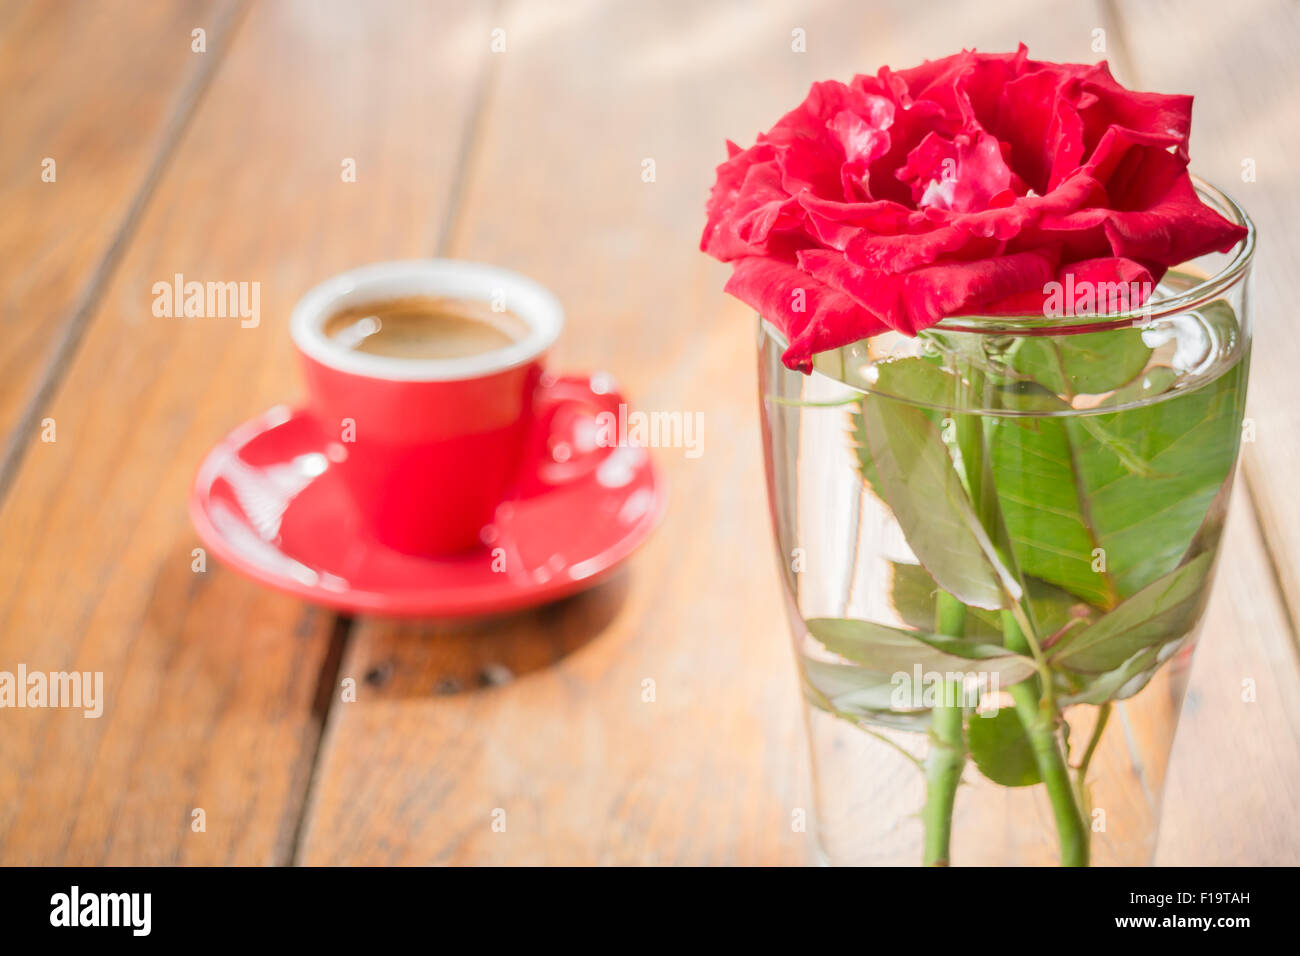 Bella tabella decorate con caffè e red rose, stock photo Foto Stock